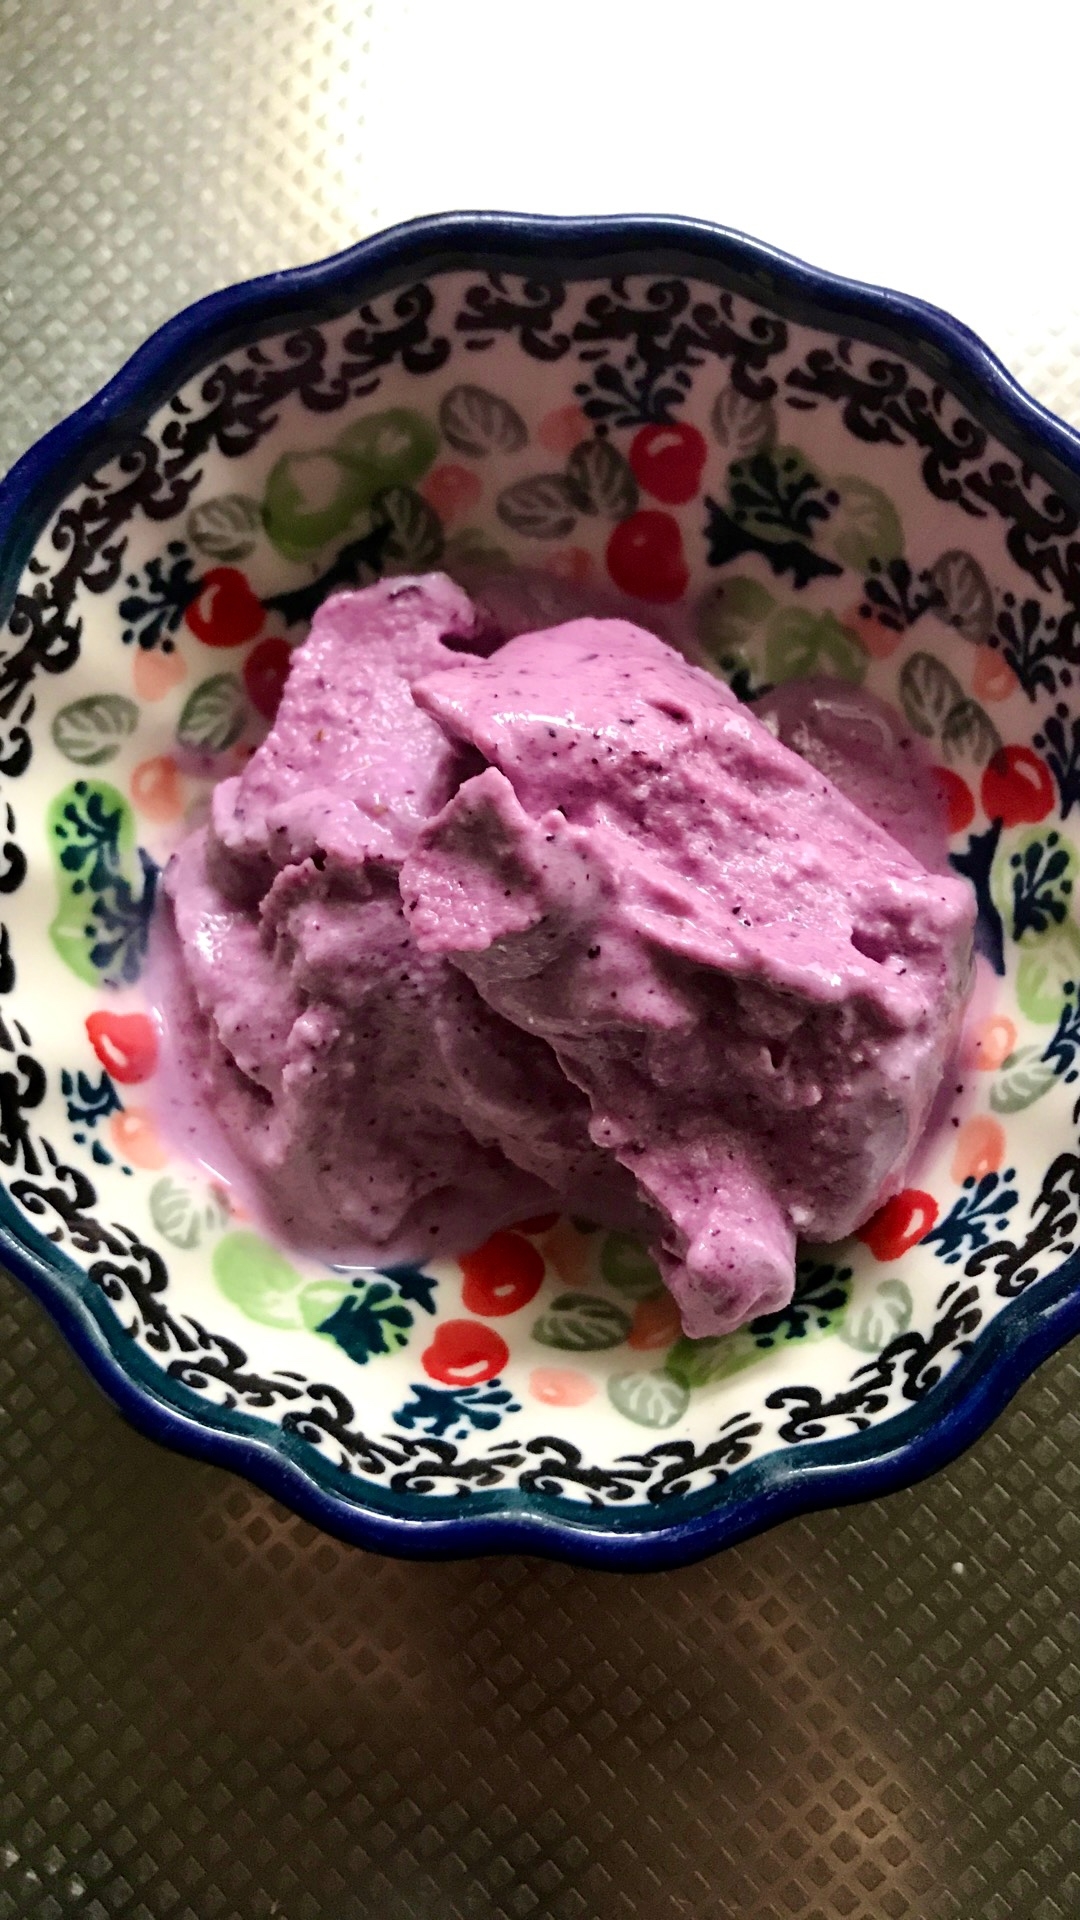 ブルーベリー味の冷凍バニラヨーグルト